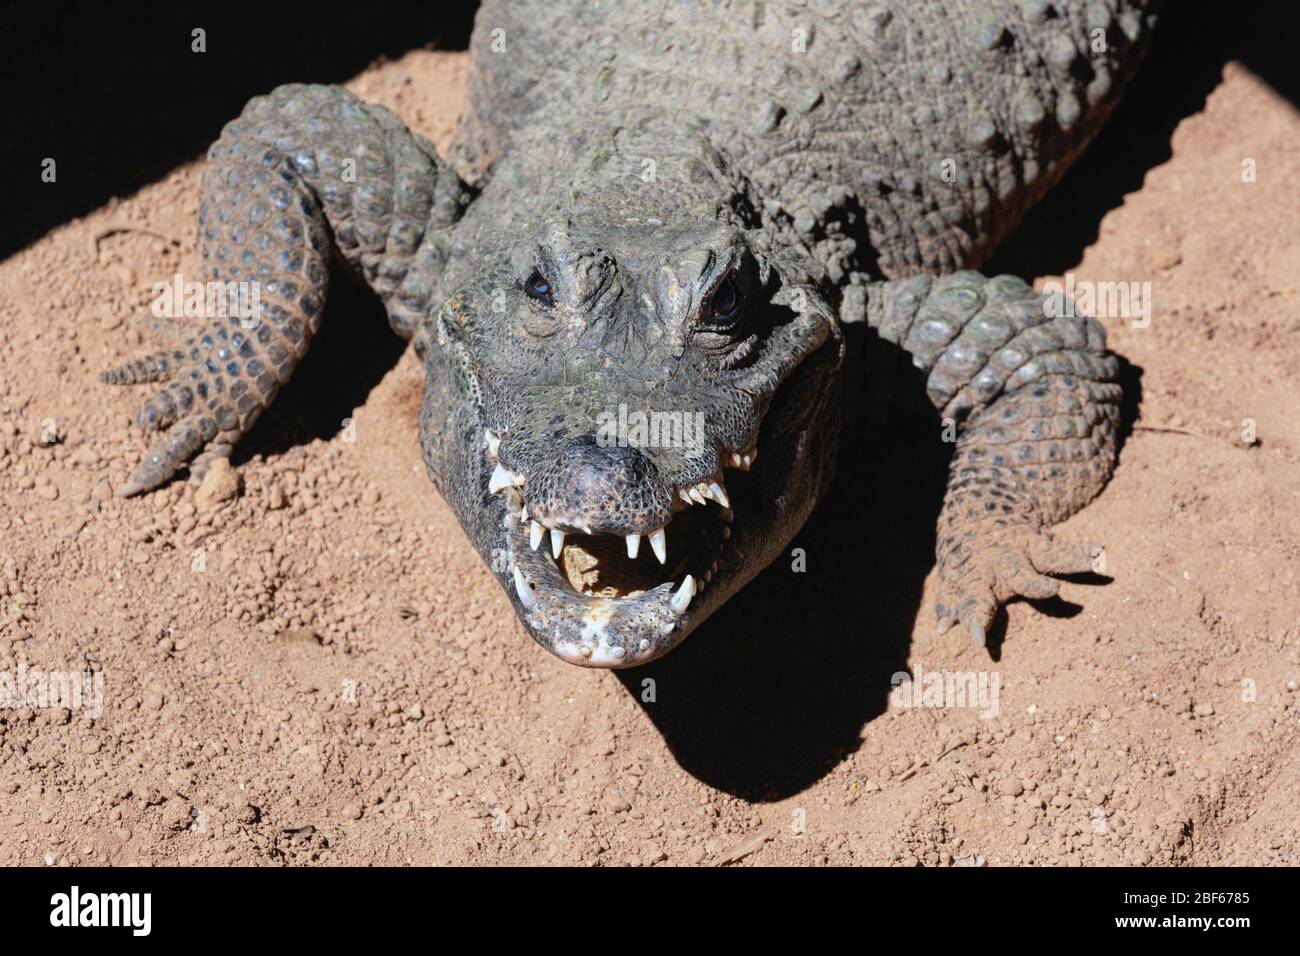 Zwergkrokodil, auch bekannt als das afrikanische Zwergkrokodil, knöchernes Krokodil oder weitschnauzenes Krokodil. Osteolaemus tetraspis. Dieses Beispiel photogra Stockfoto